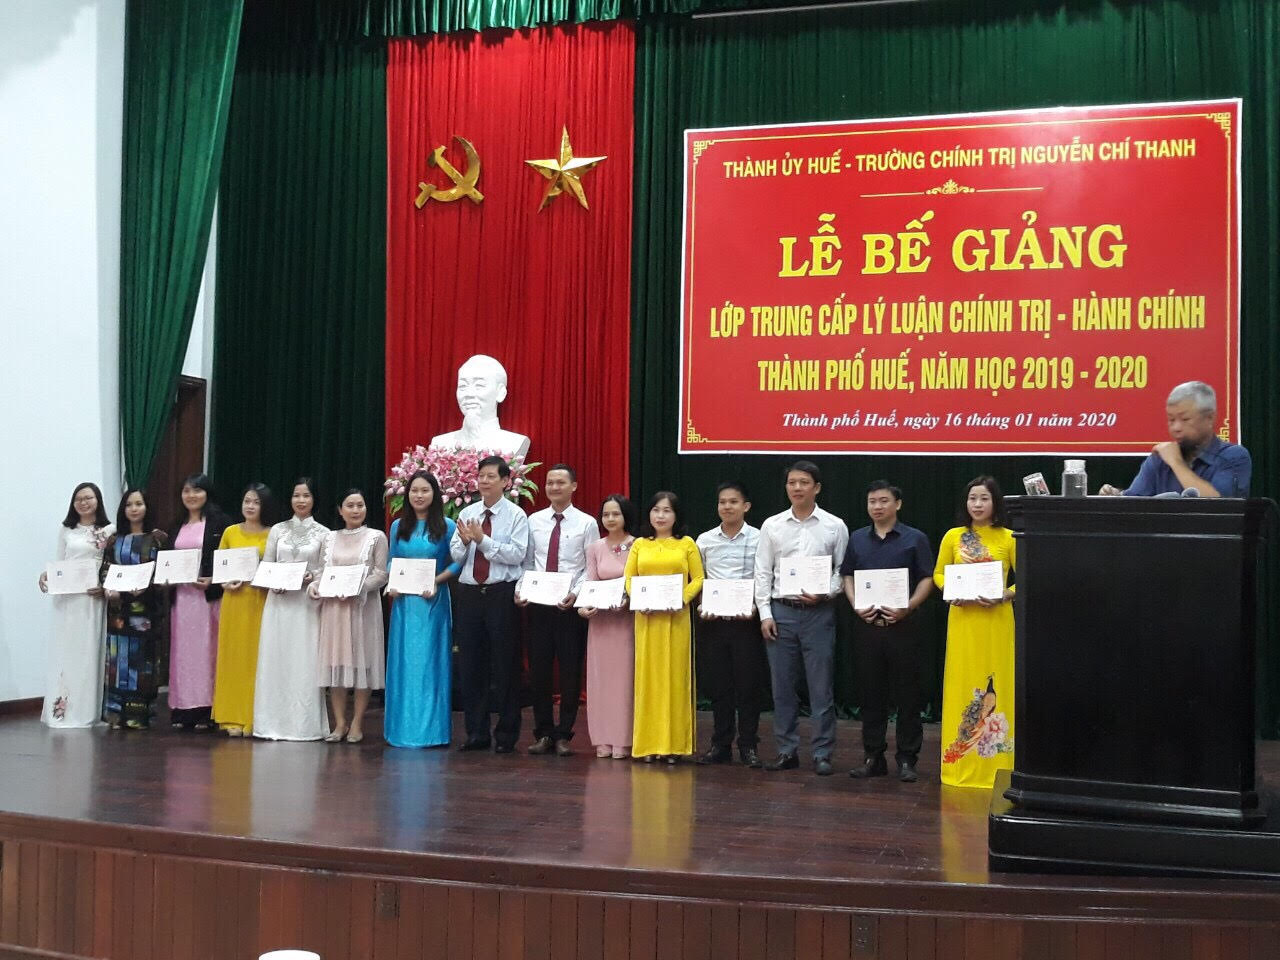 Trường chính trị Nguyễn Chí Thanh